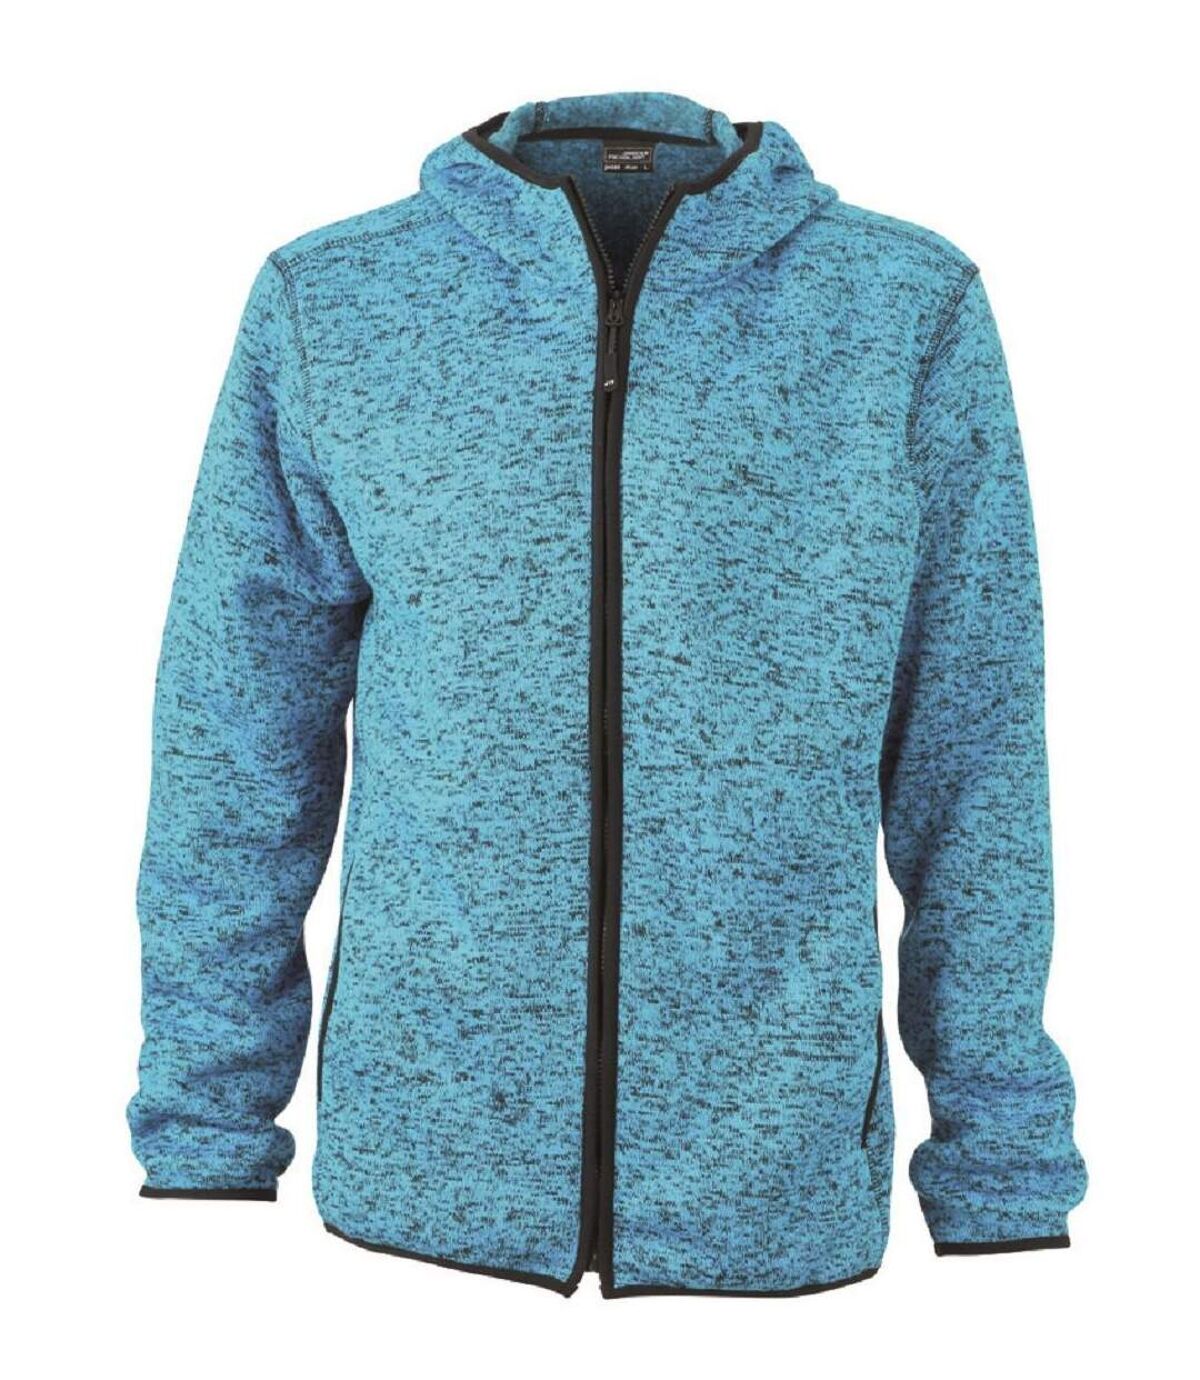 Veste tricot polaire à capuche HOMME- JN589 - bleu clair chiné